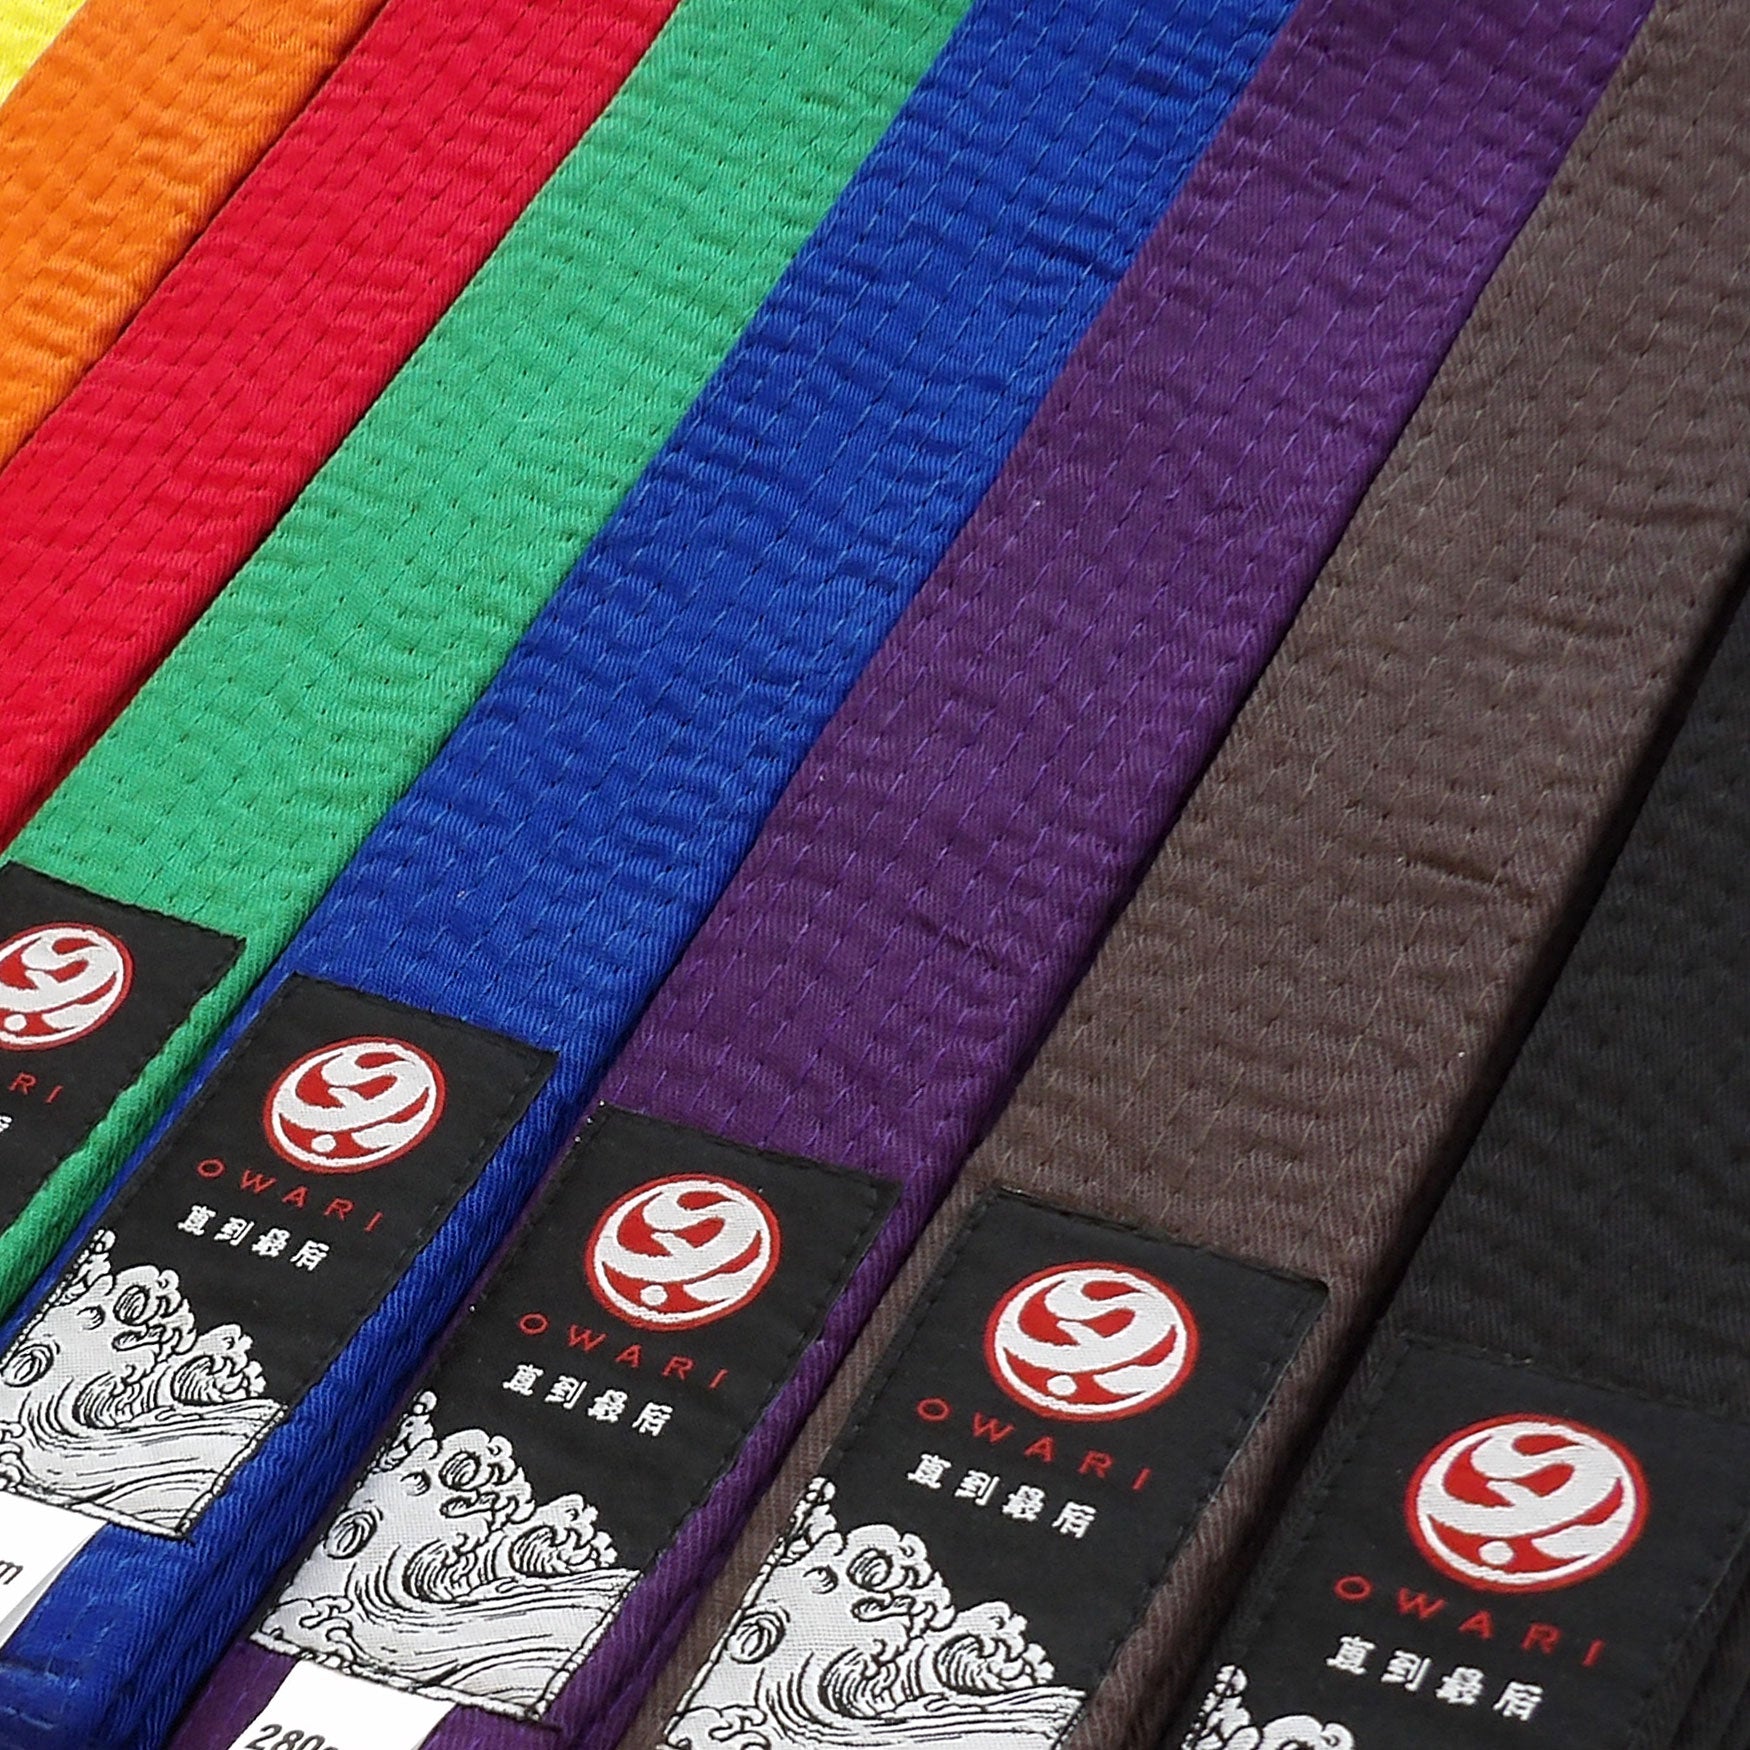 Karate Belts Order UK - Gradings & Structure